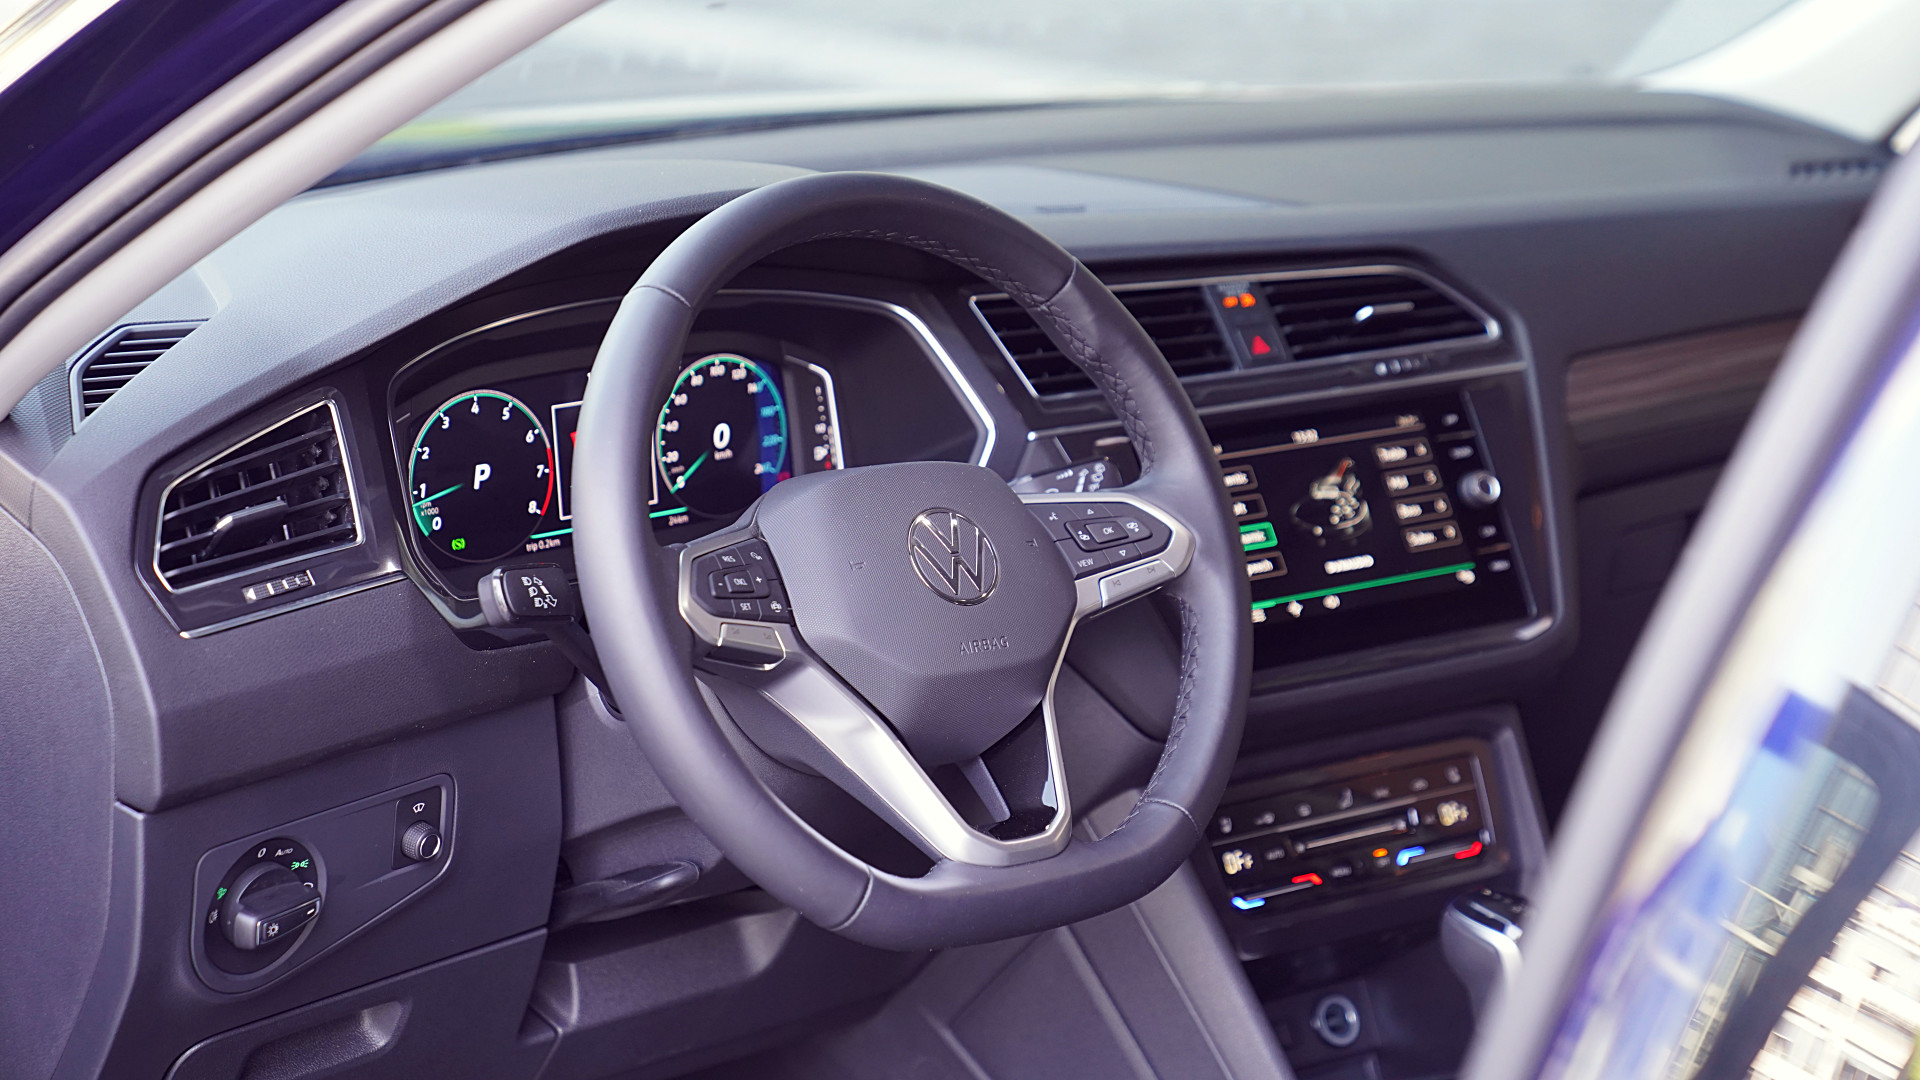 VW Tiguan thêm phiên bản mới tại Việt Nam: Thêm tiện nghi và an toàn, giá 1,688 tỷ đồng rẻ hơn cả bản tiêu chuẩn- Ảnh 9.